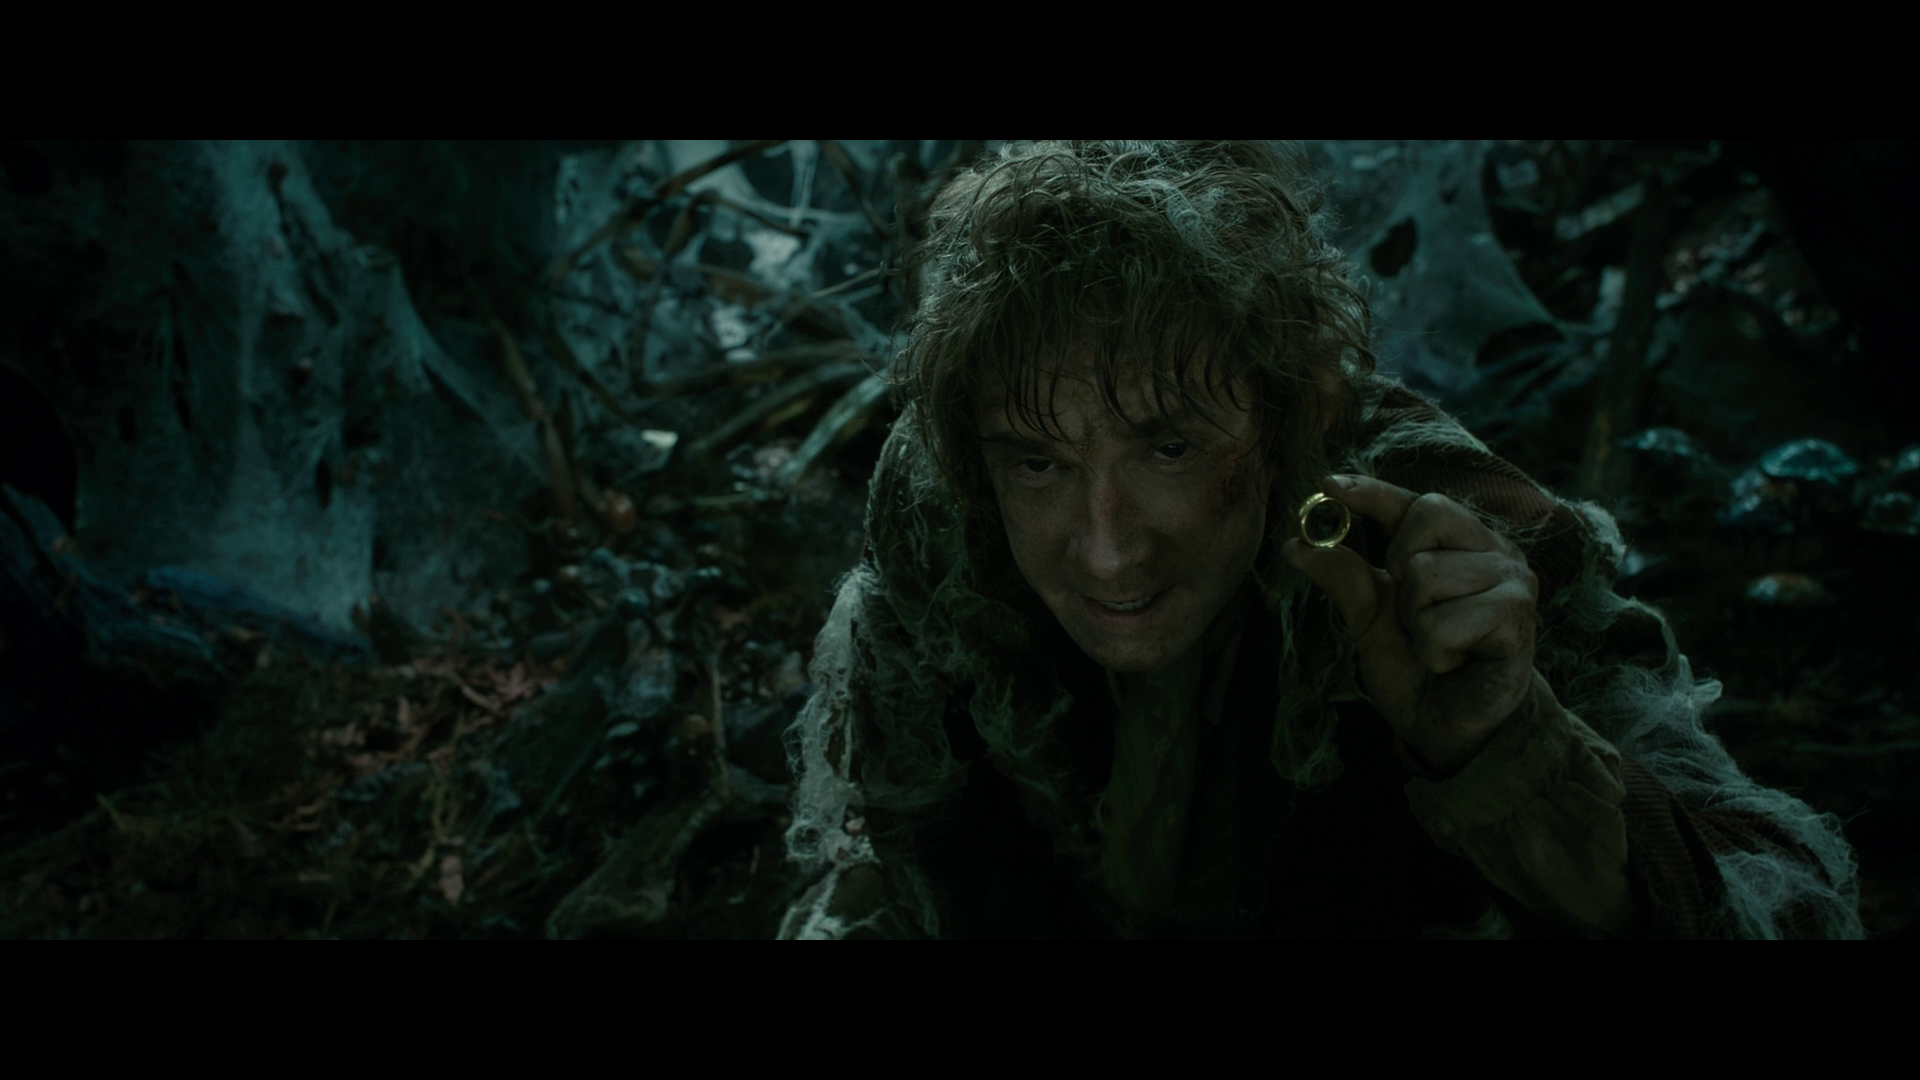 [霍比特人2].The.Hobbit.The.Desolation.of.Smaug.2013.EXTENDED.BluRay.1080p.AVC.DTS-HD.MA.7.1-Tay   41.01G- u2 n) A4 b( T-7.png